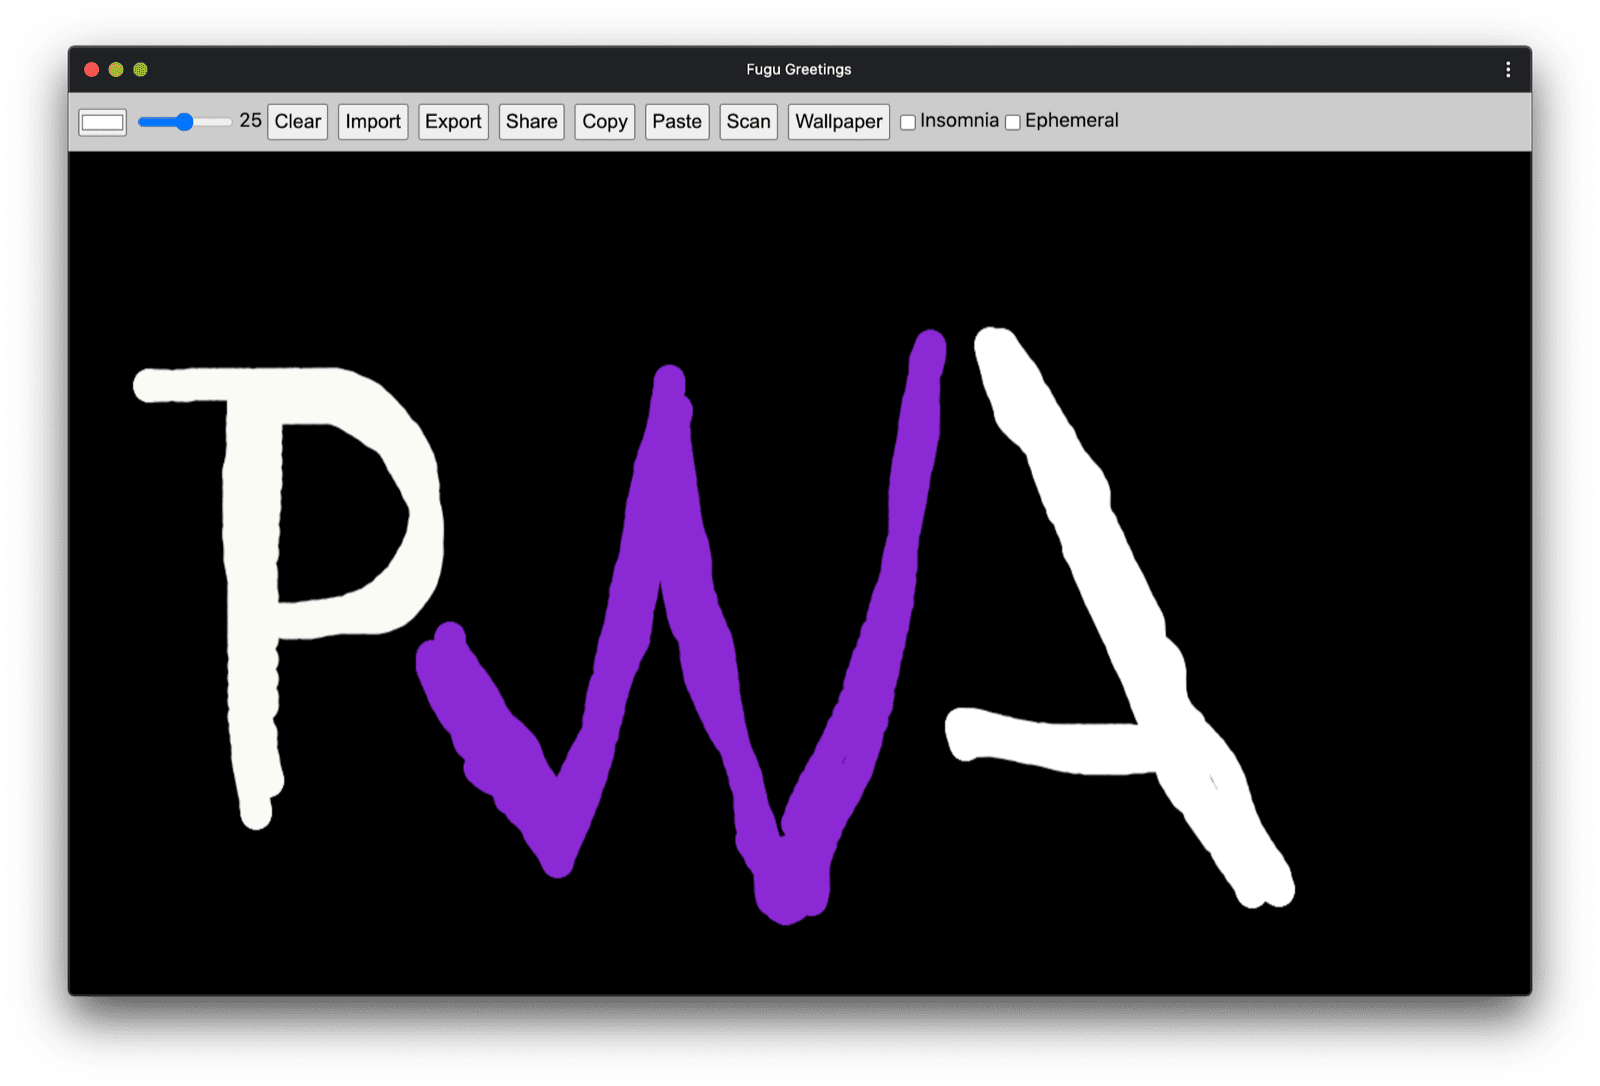 تطبيق Fugu Greetings PWA برسم يشبه شعار منتدى PWA.